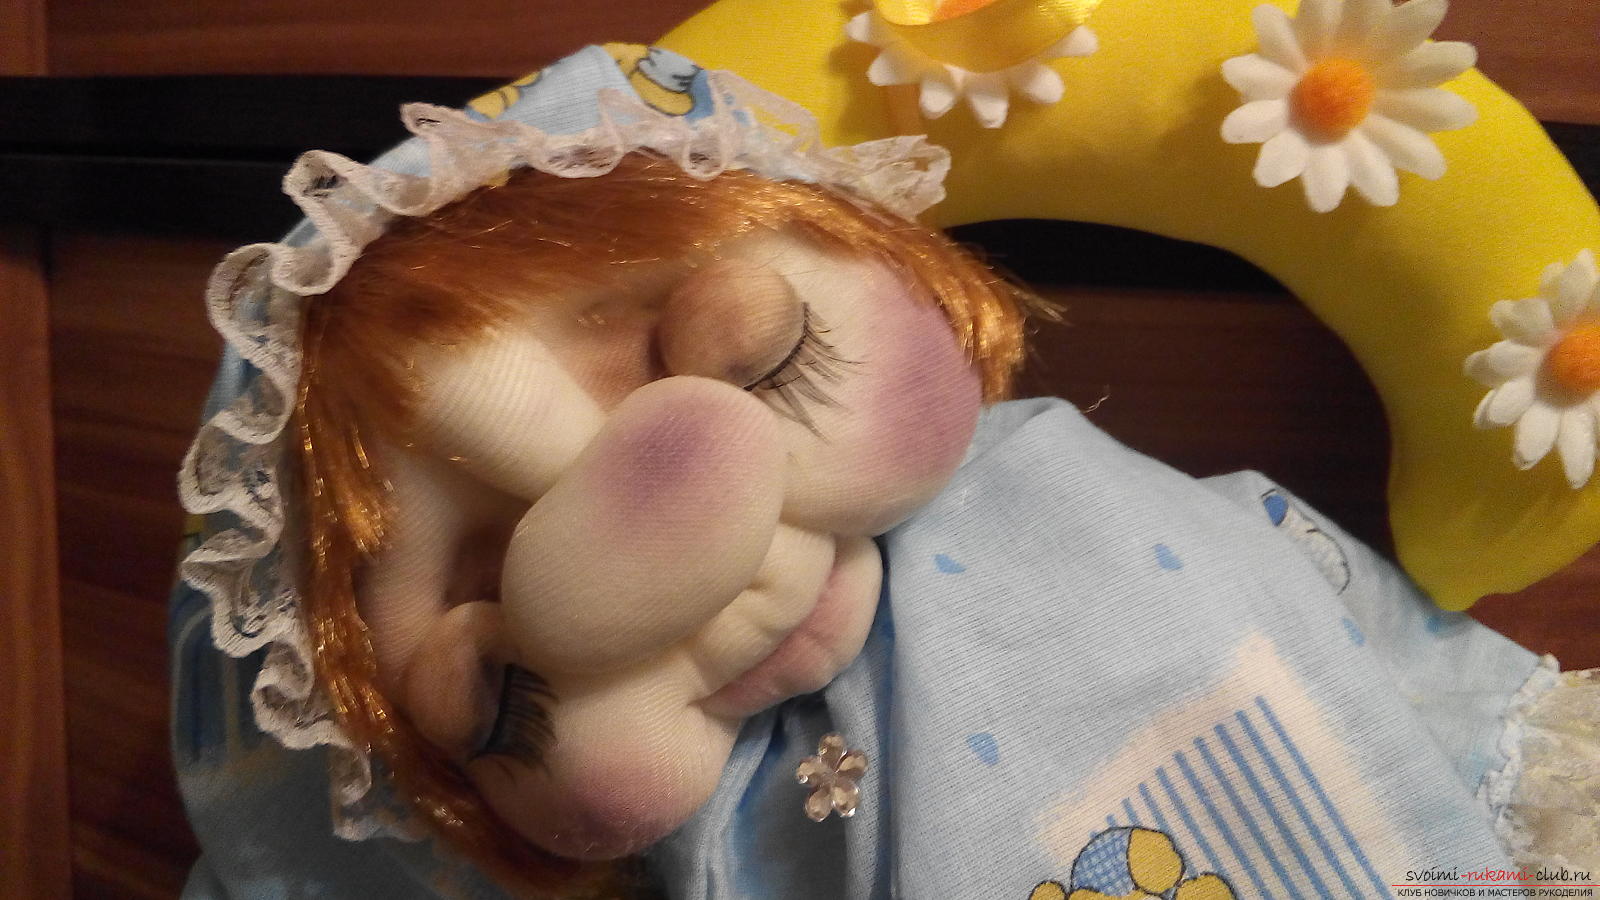 Сплюшка - кукла в чулочной технике